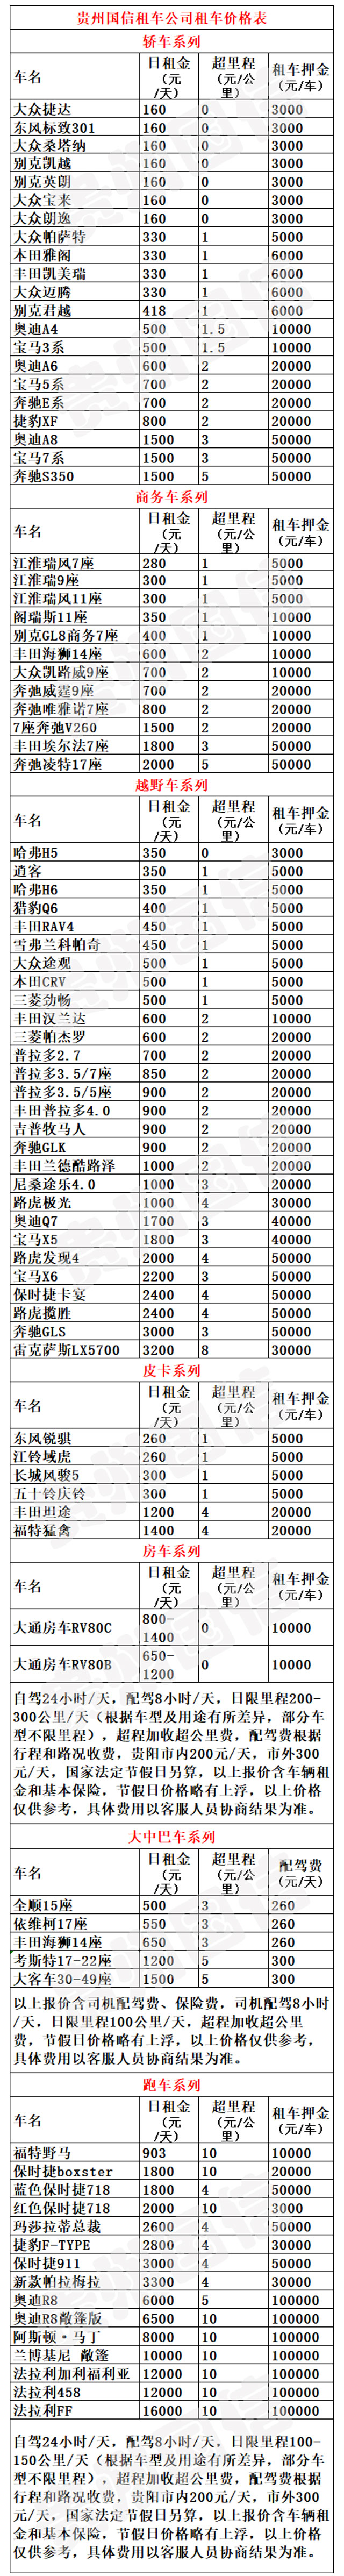 贵州国信租车公司提供的贵阳市汽车租赁常用车型价格表